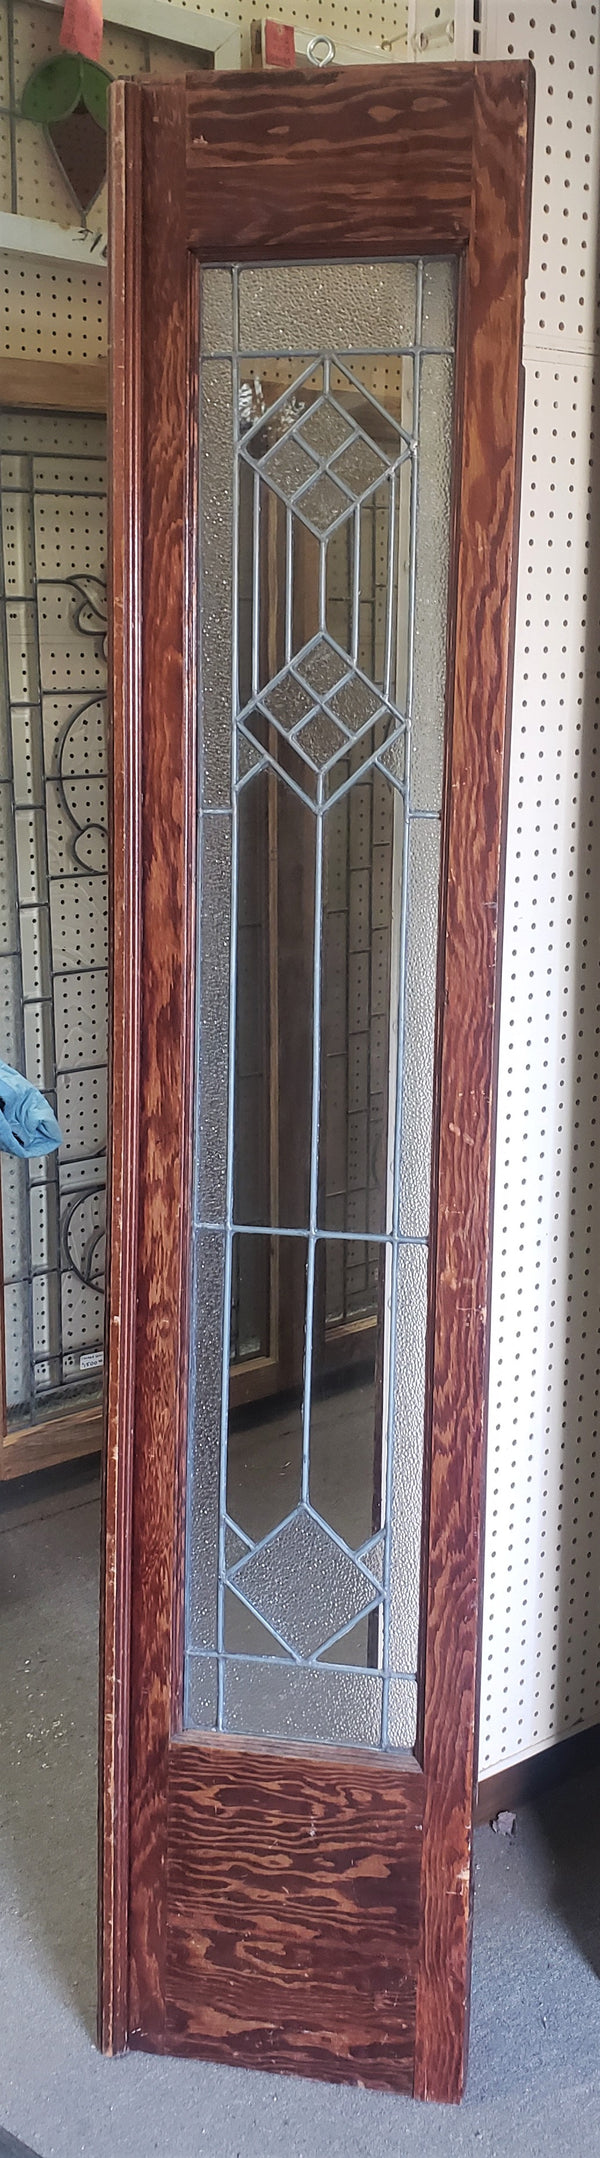 Art Deco Textured Leaded Window or Door in Wood Frame  14 3/4" x 75 1/2" #GA9152